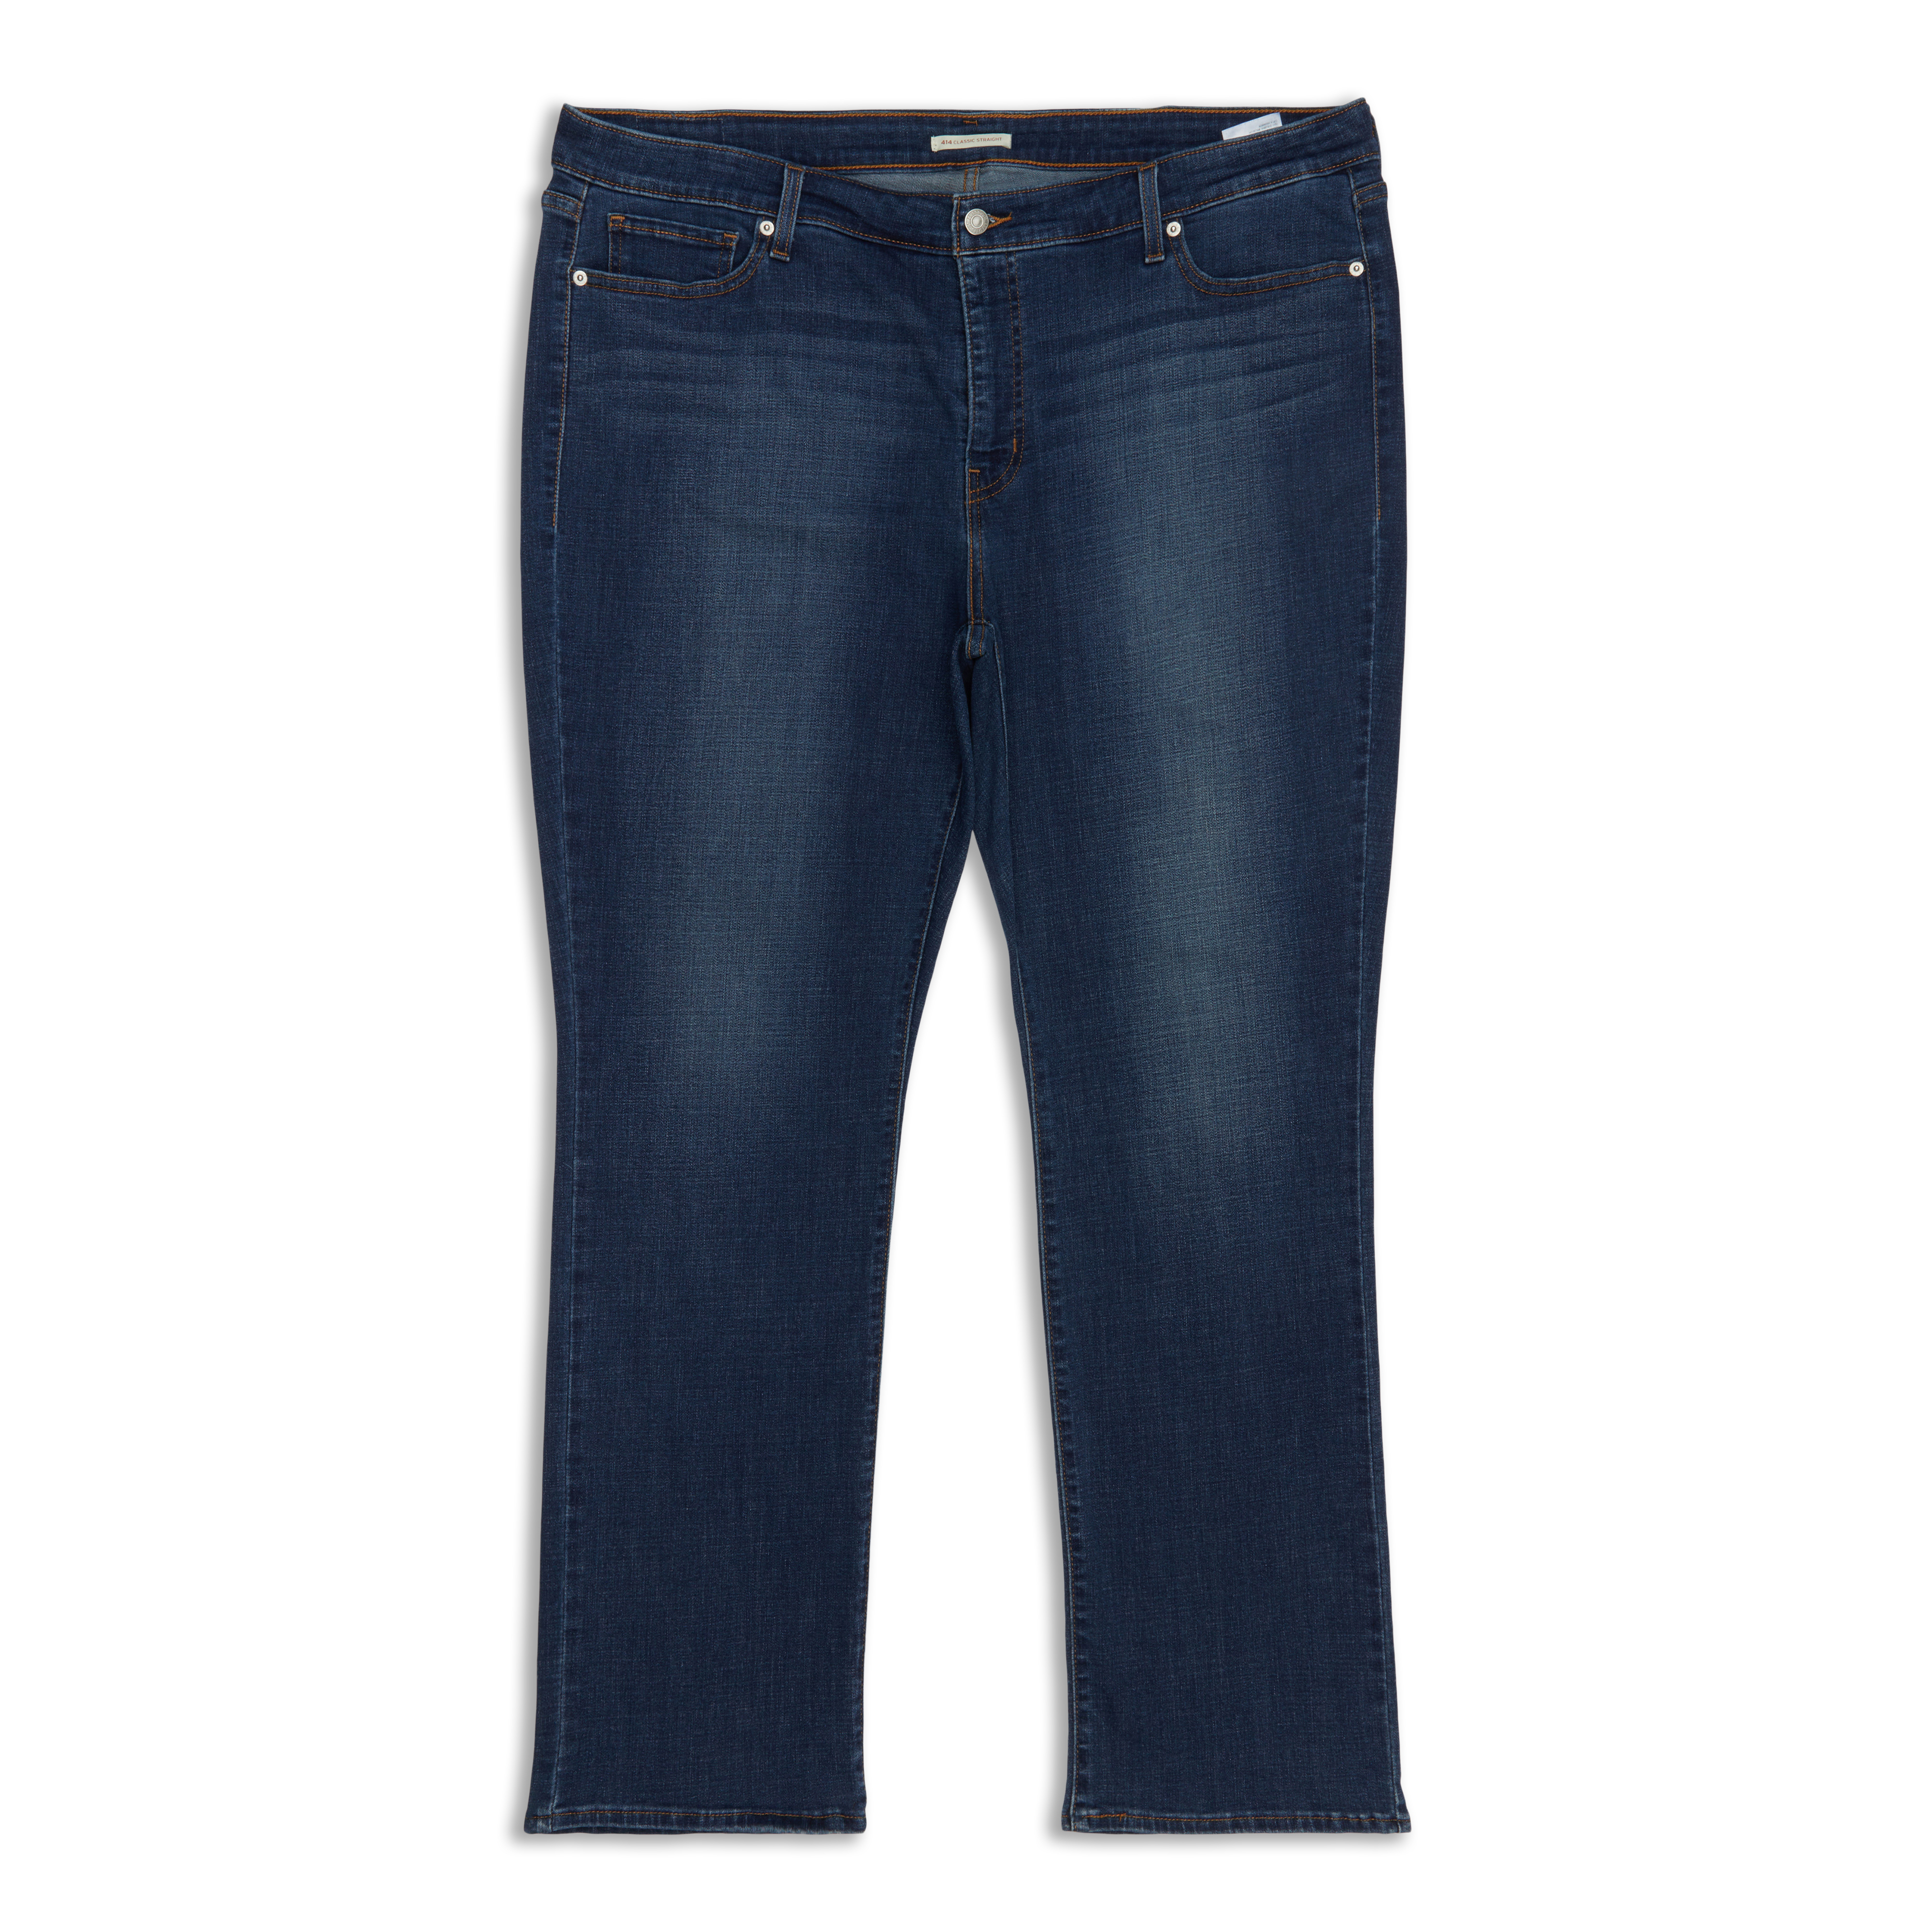 Levis 414 Classic Straight Women's Jeans (Plus Size) Oak Blues